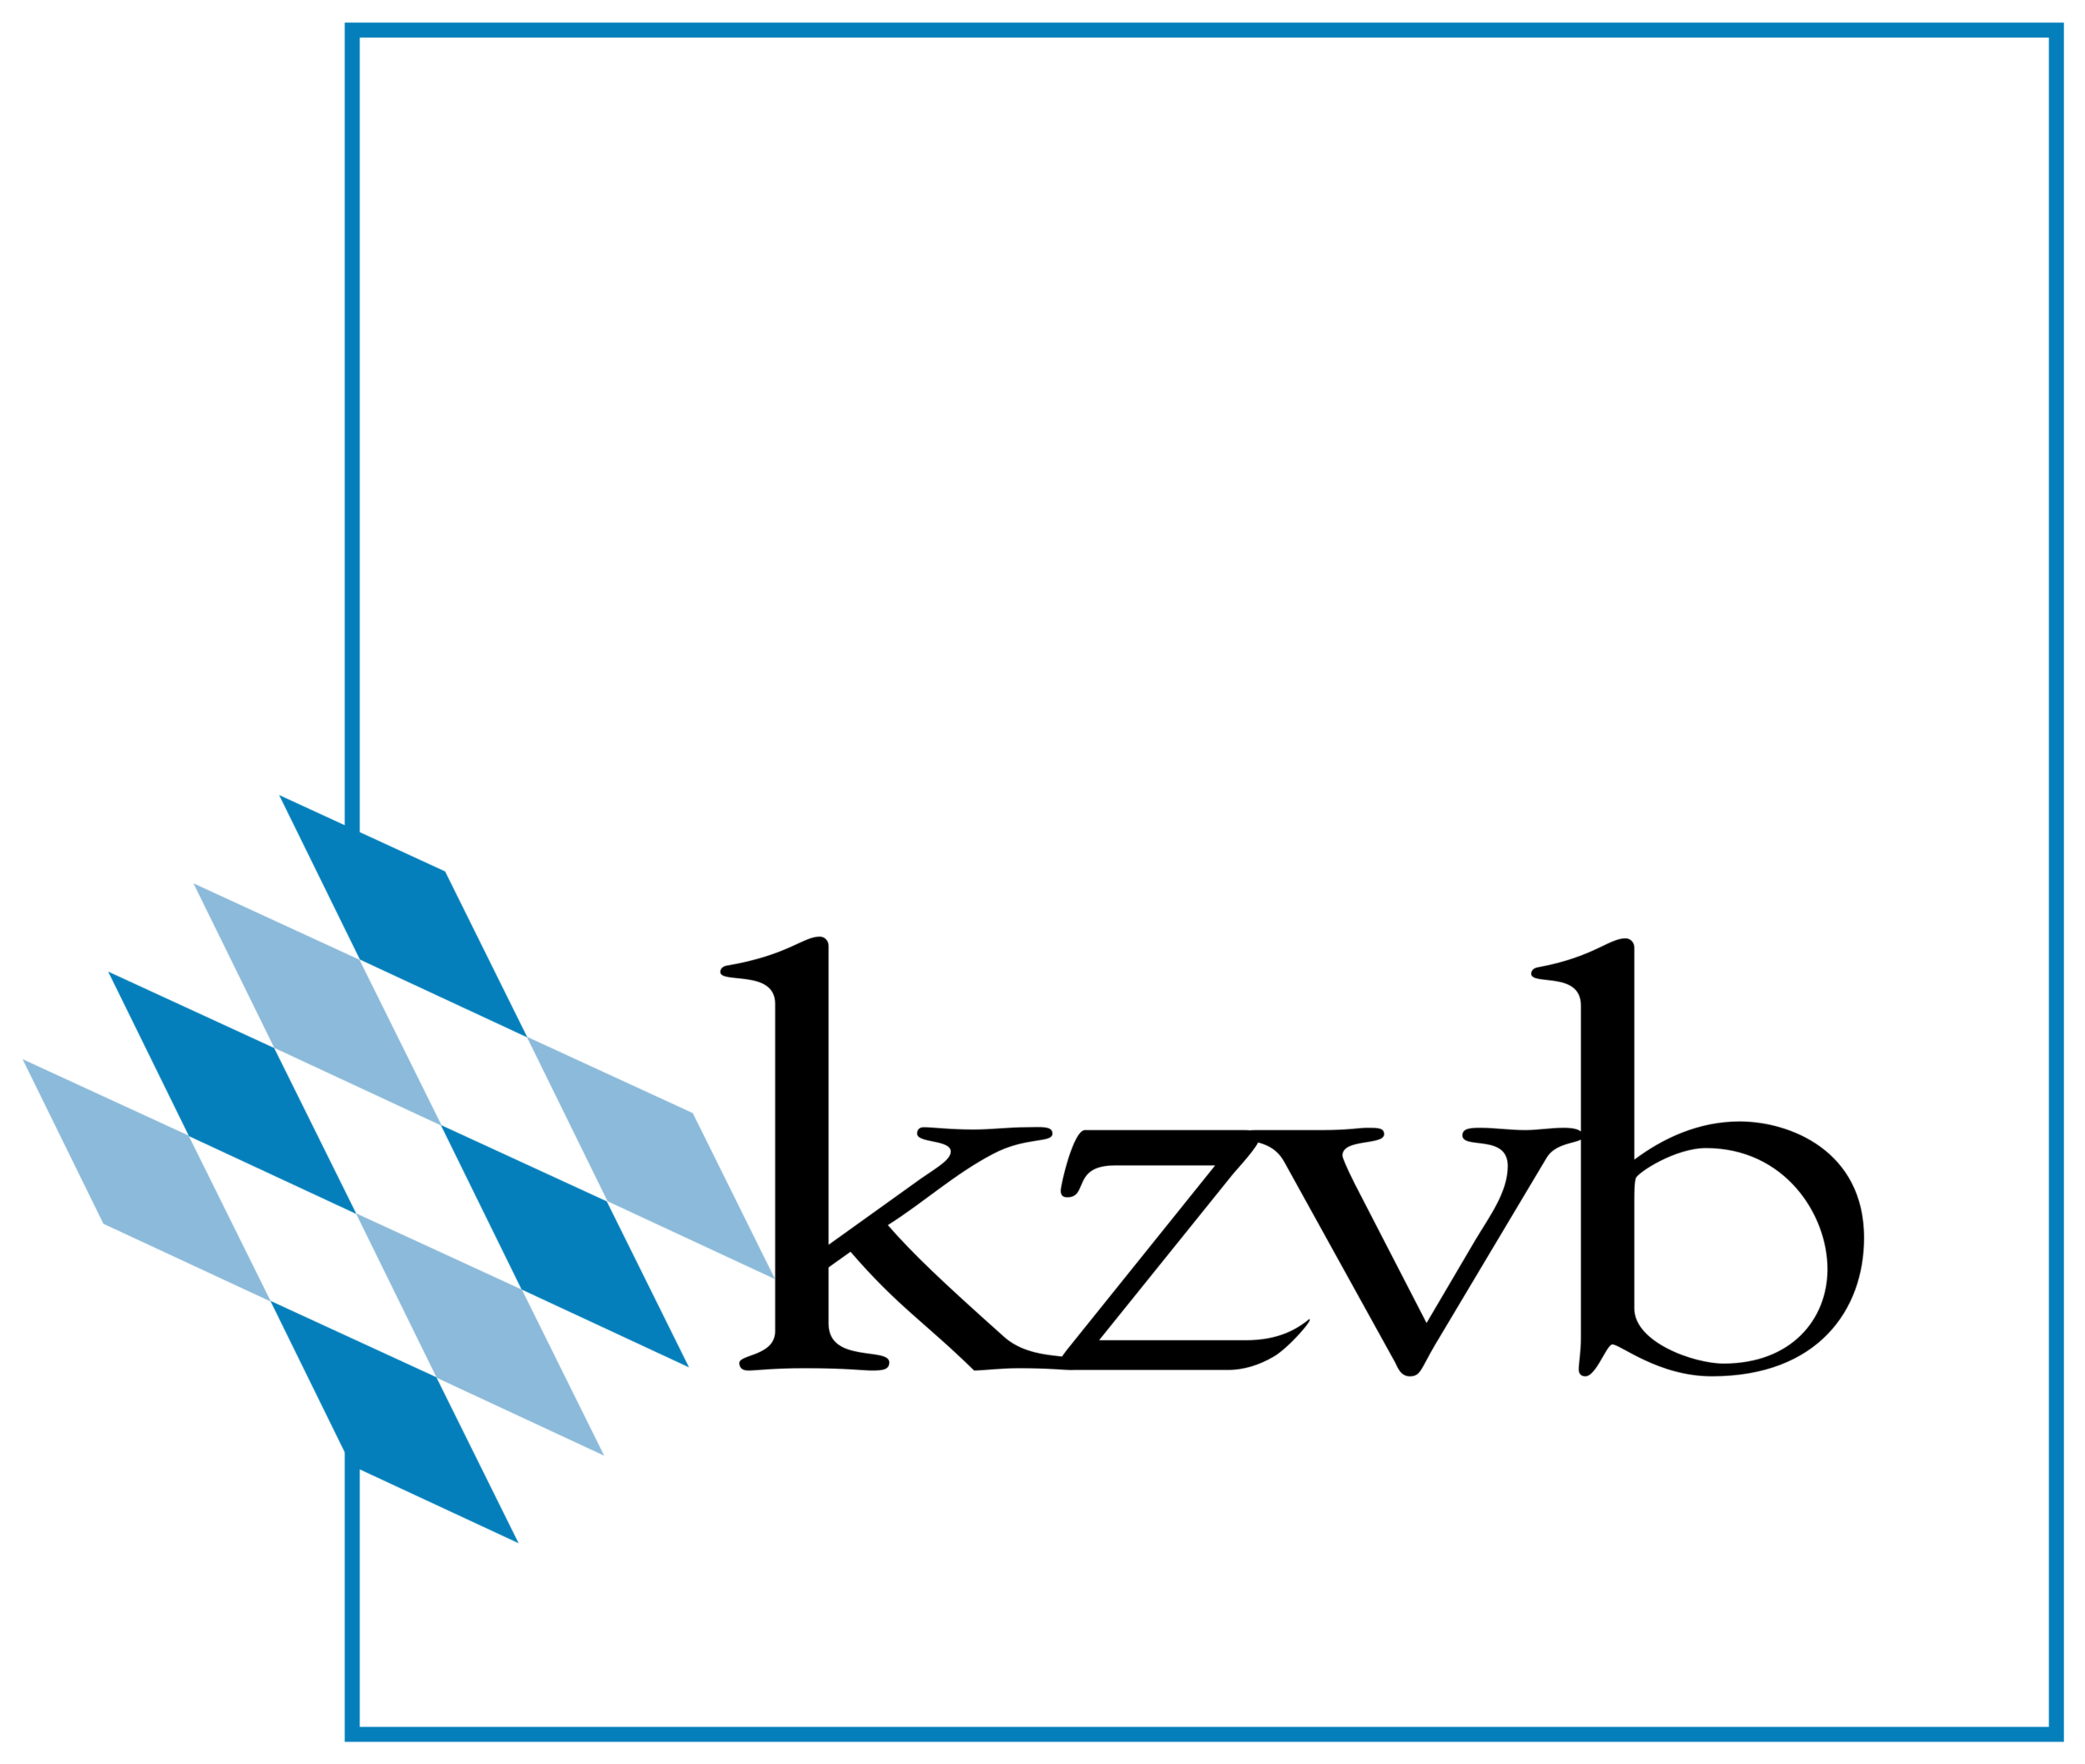 Kassenzahnärztliche_Vereinigung_Bayerns_Logo.svg.png